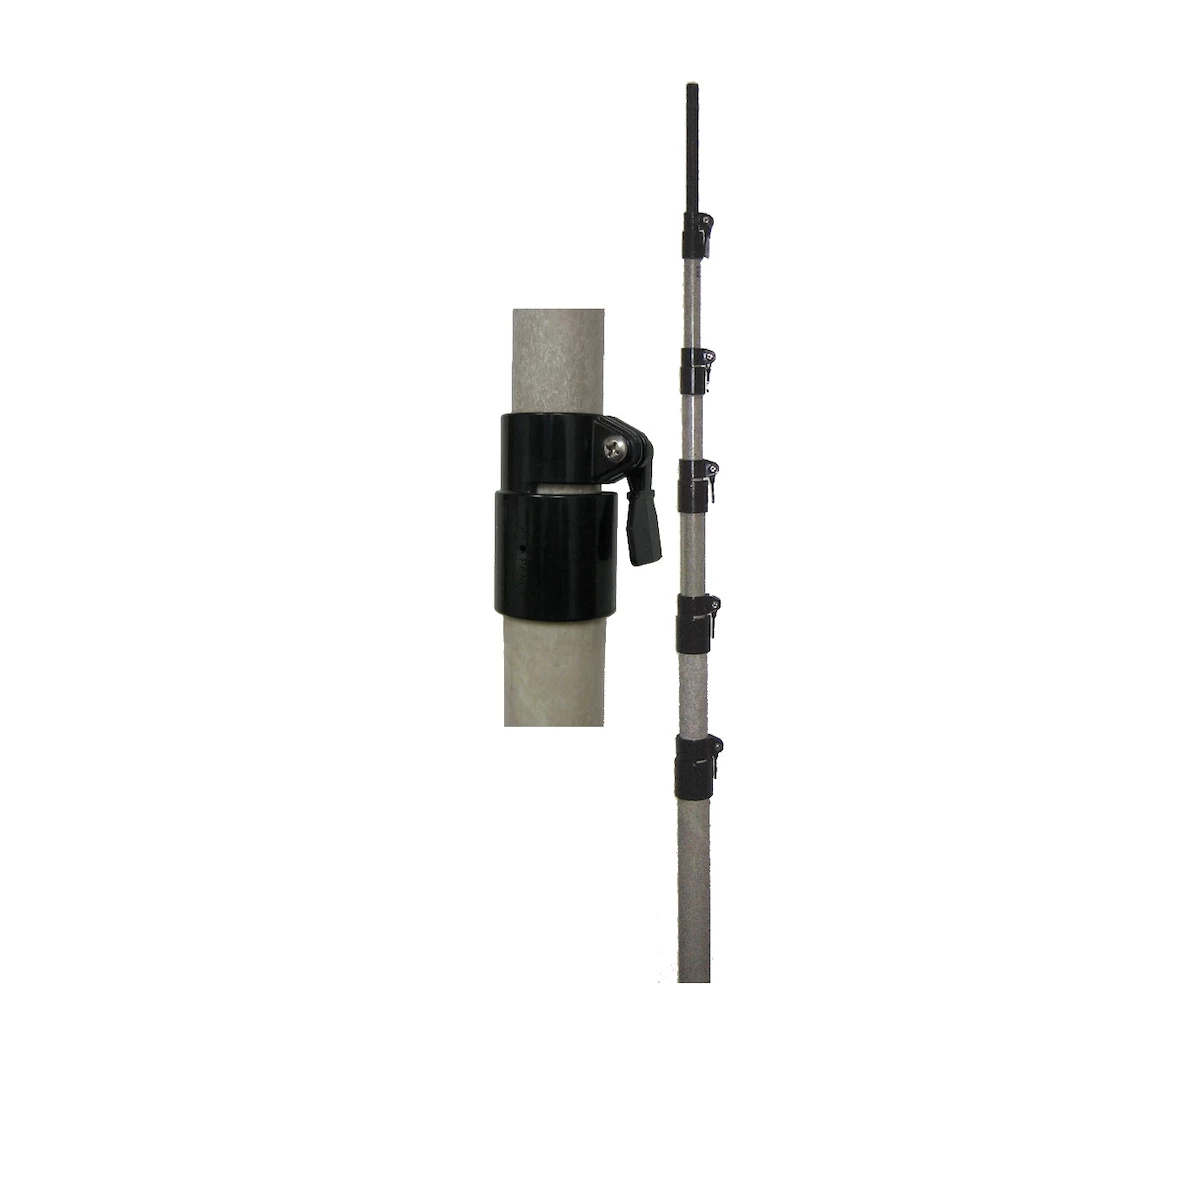 MFJ 50' Telescoping Fibreglass Mast with Hose Clamps - GPS Central